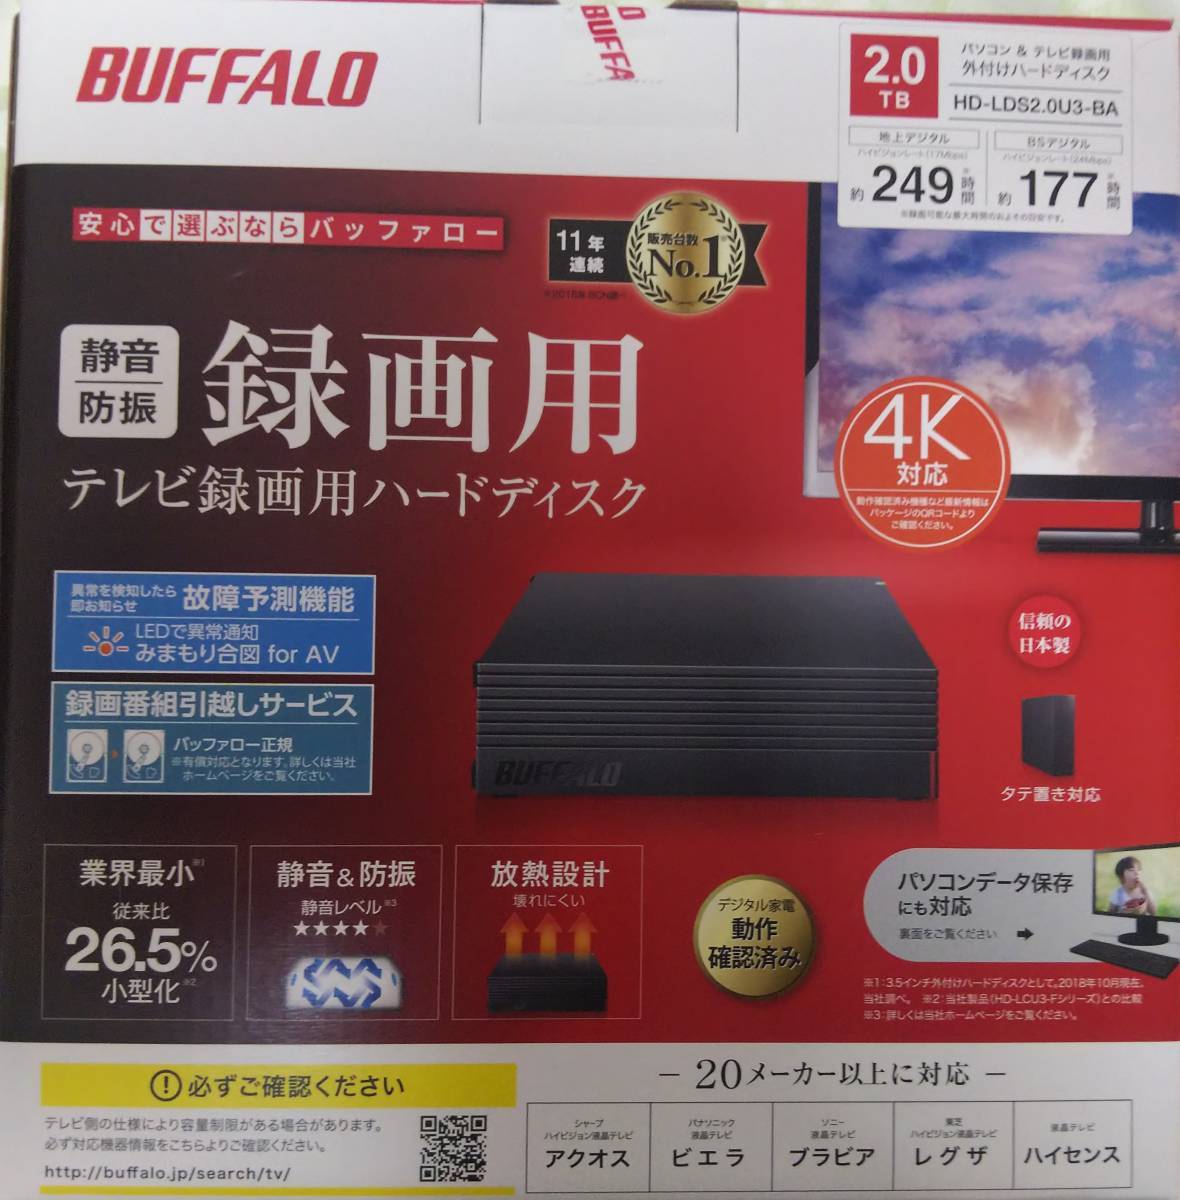 【新品未開封】BUFFALO 2TB パソコン&テレビ録画用外付けハードディスク HDD HD-LDS2.0U3-BA